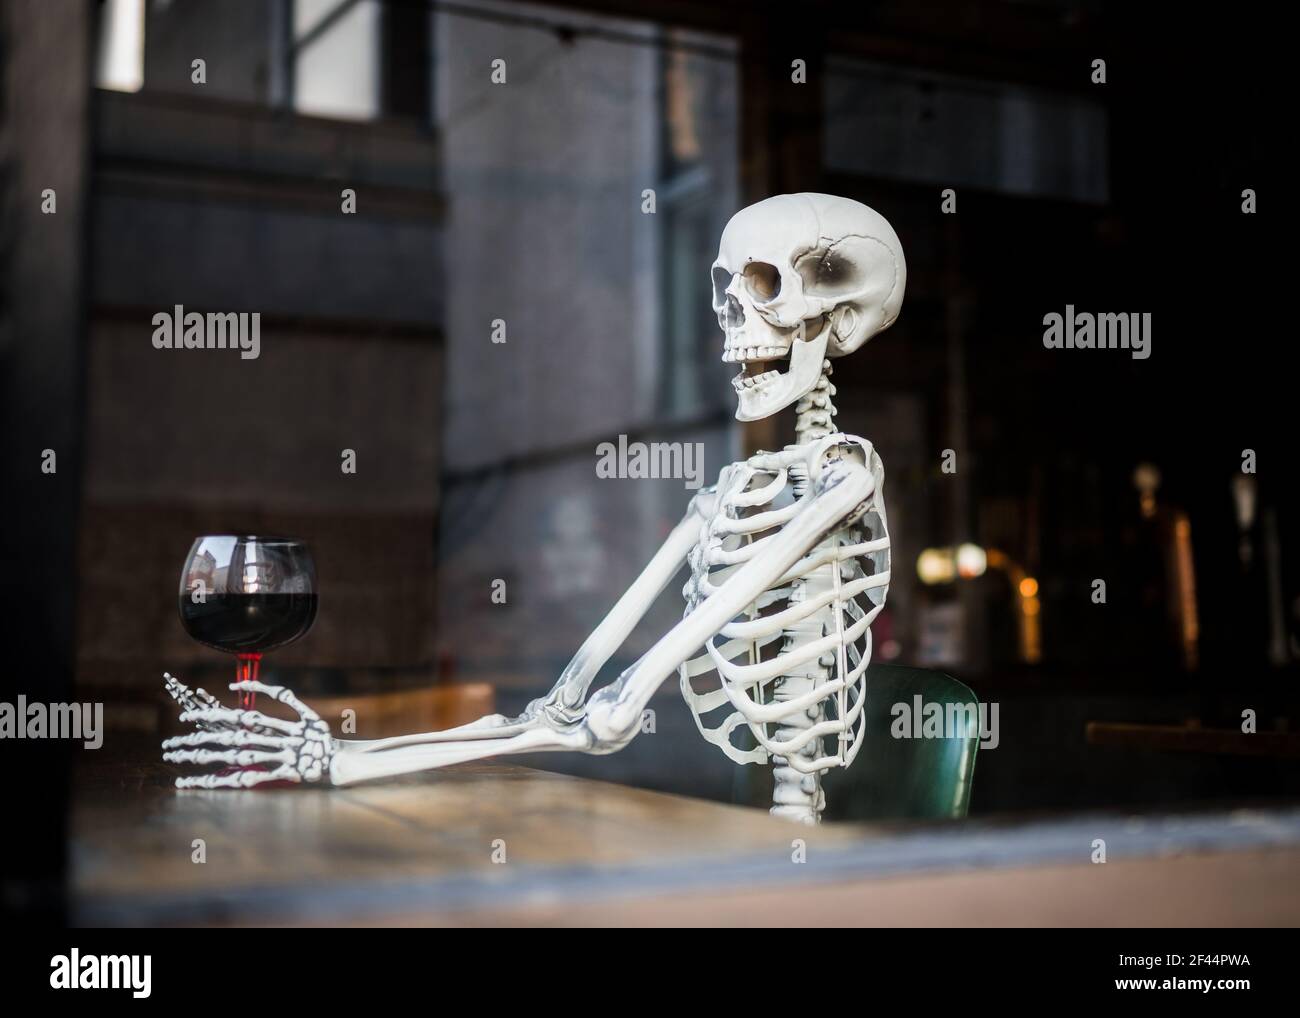 Menschliche Skelettknochen saßen in Ledersessel im Pub Holding Ein Glas alkoholischen Wein wartet eine lange Zeit auf Pubs und Bars, die nach Schließung wieder geöffnet werden können Stockfoto